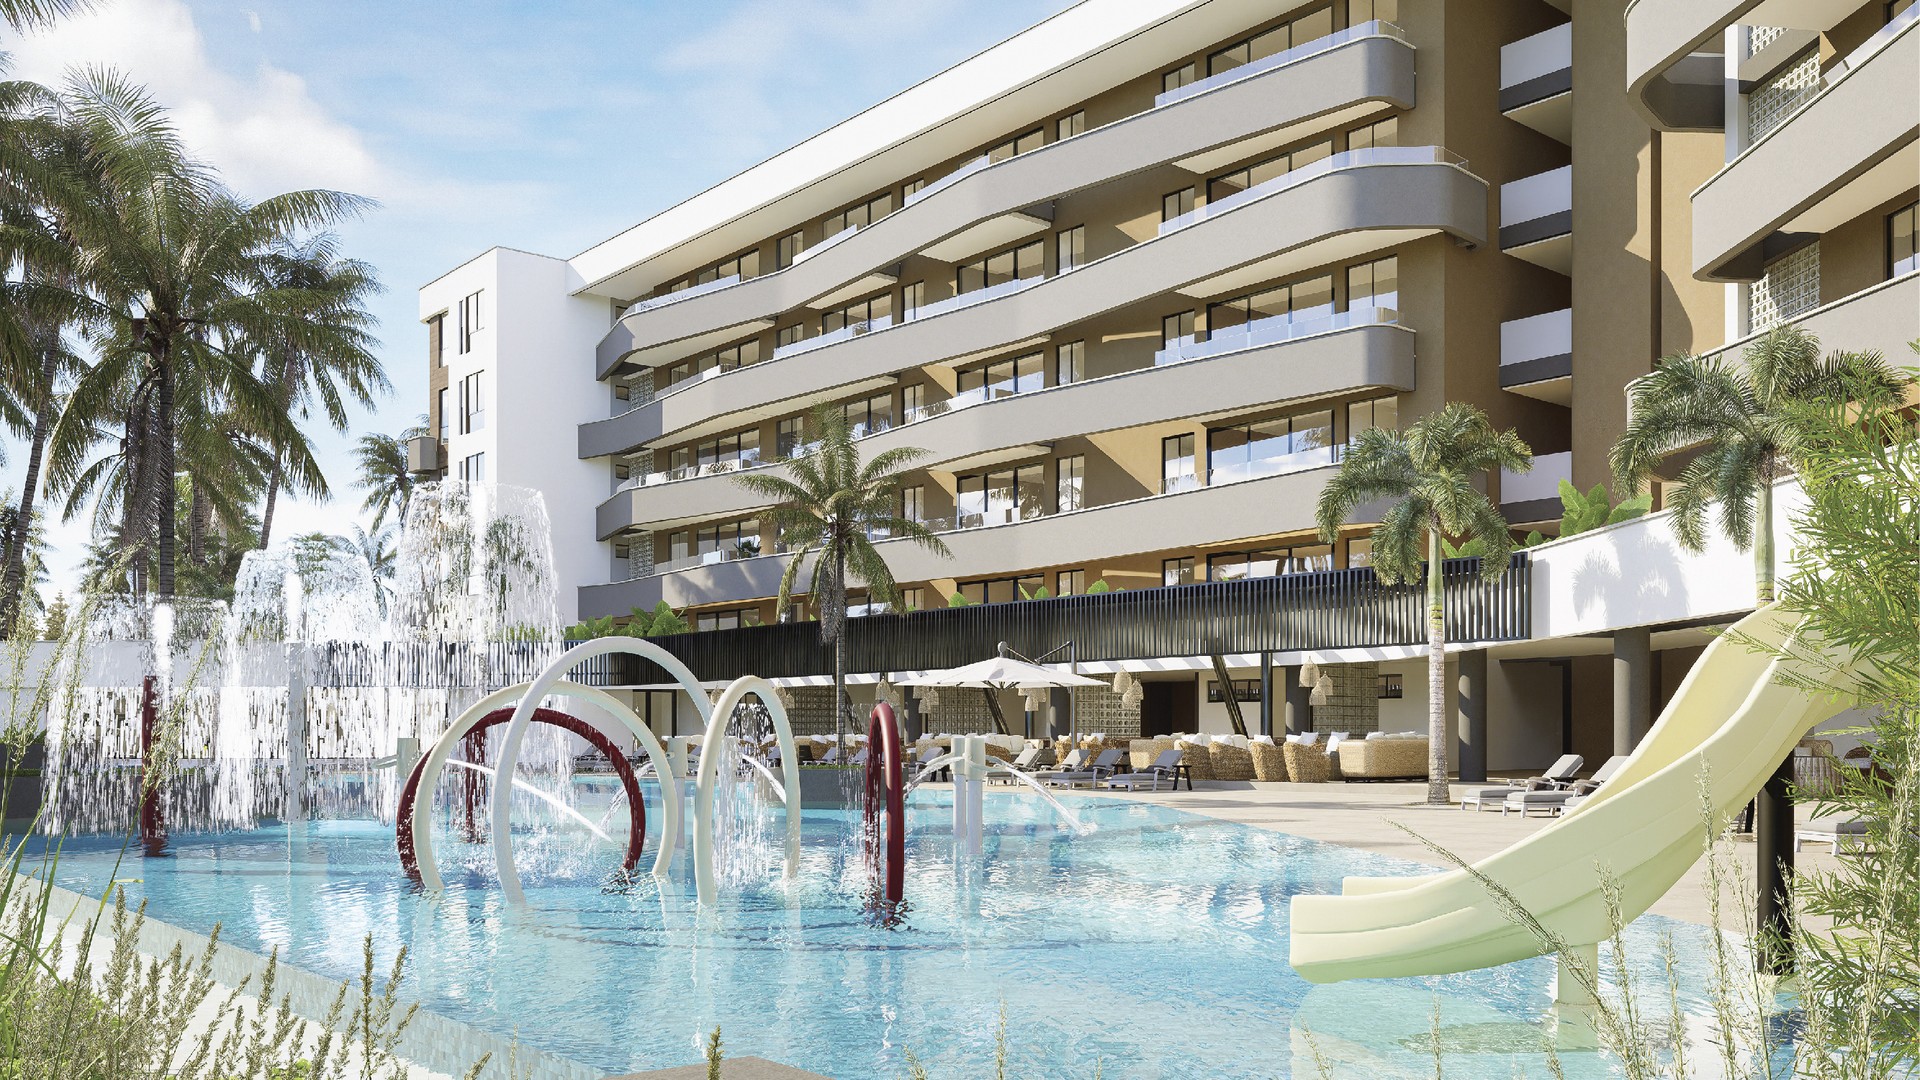 apartamentos - Venta de apartamentos en bávaro Punta cana con Club de Playa y campo de golf. 2